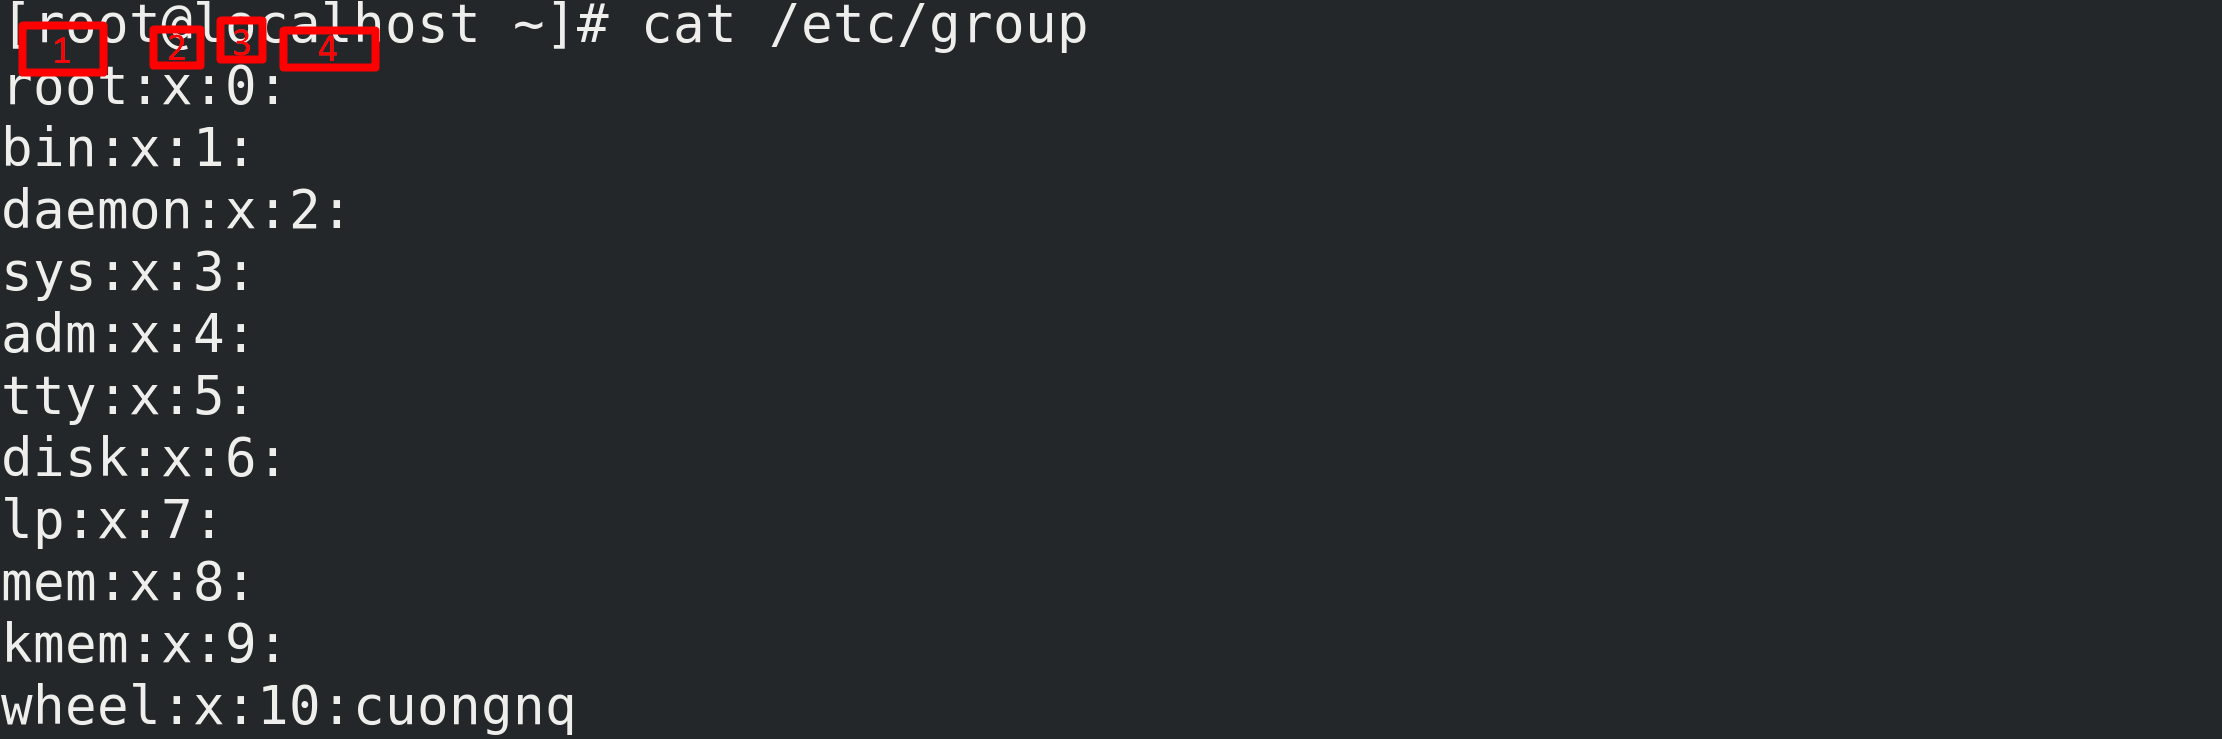 Quản trị Users and Groups trên linux 23